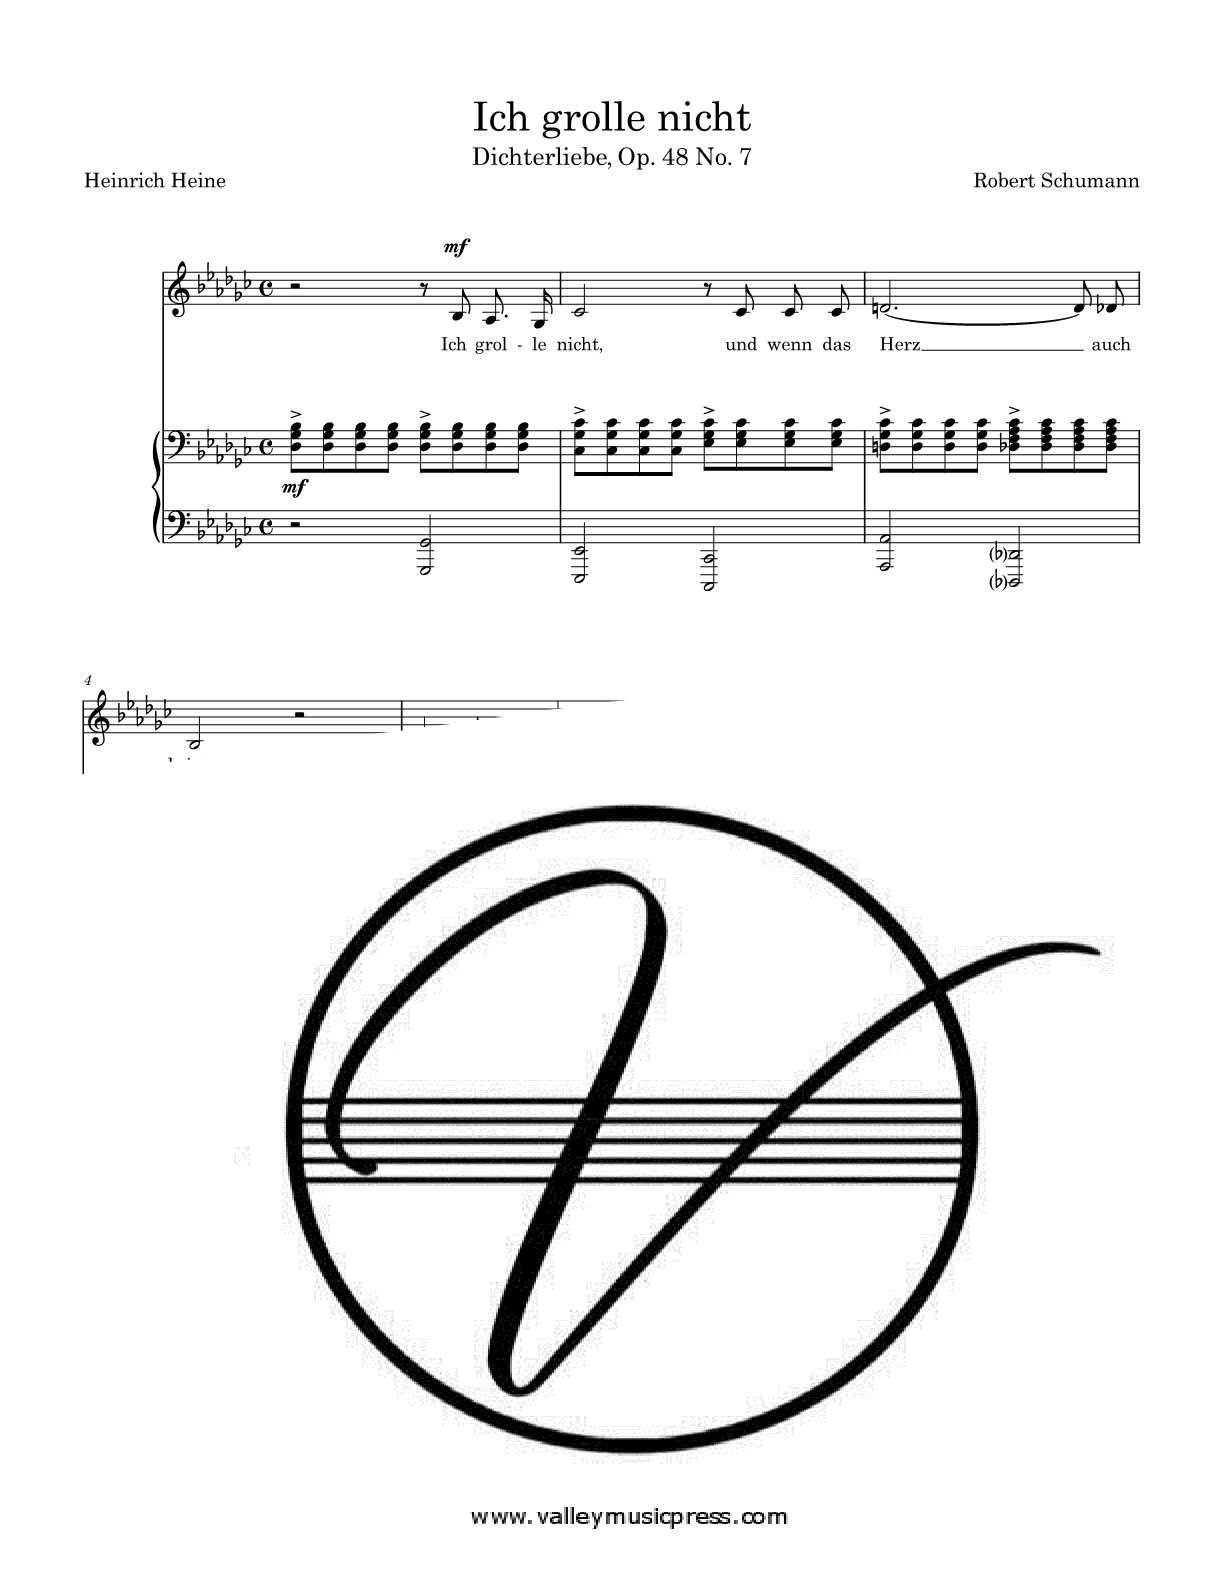 Schumann - Ich grolle nicht Op. 48 No. 7 (Voice) - Click Image to Close